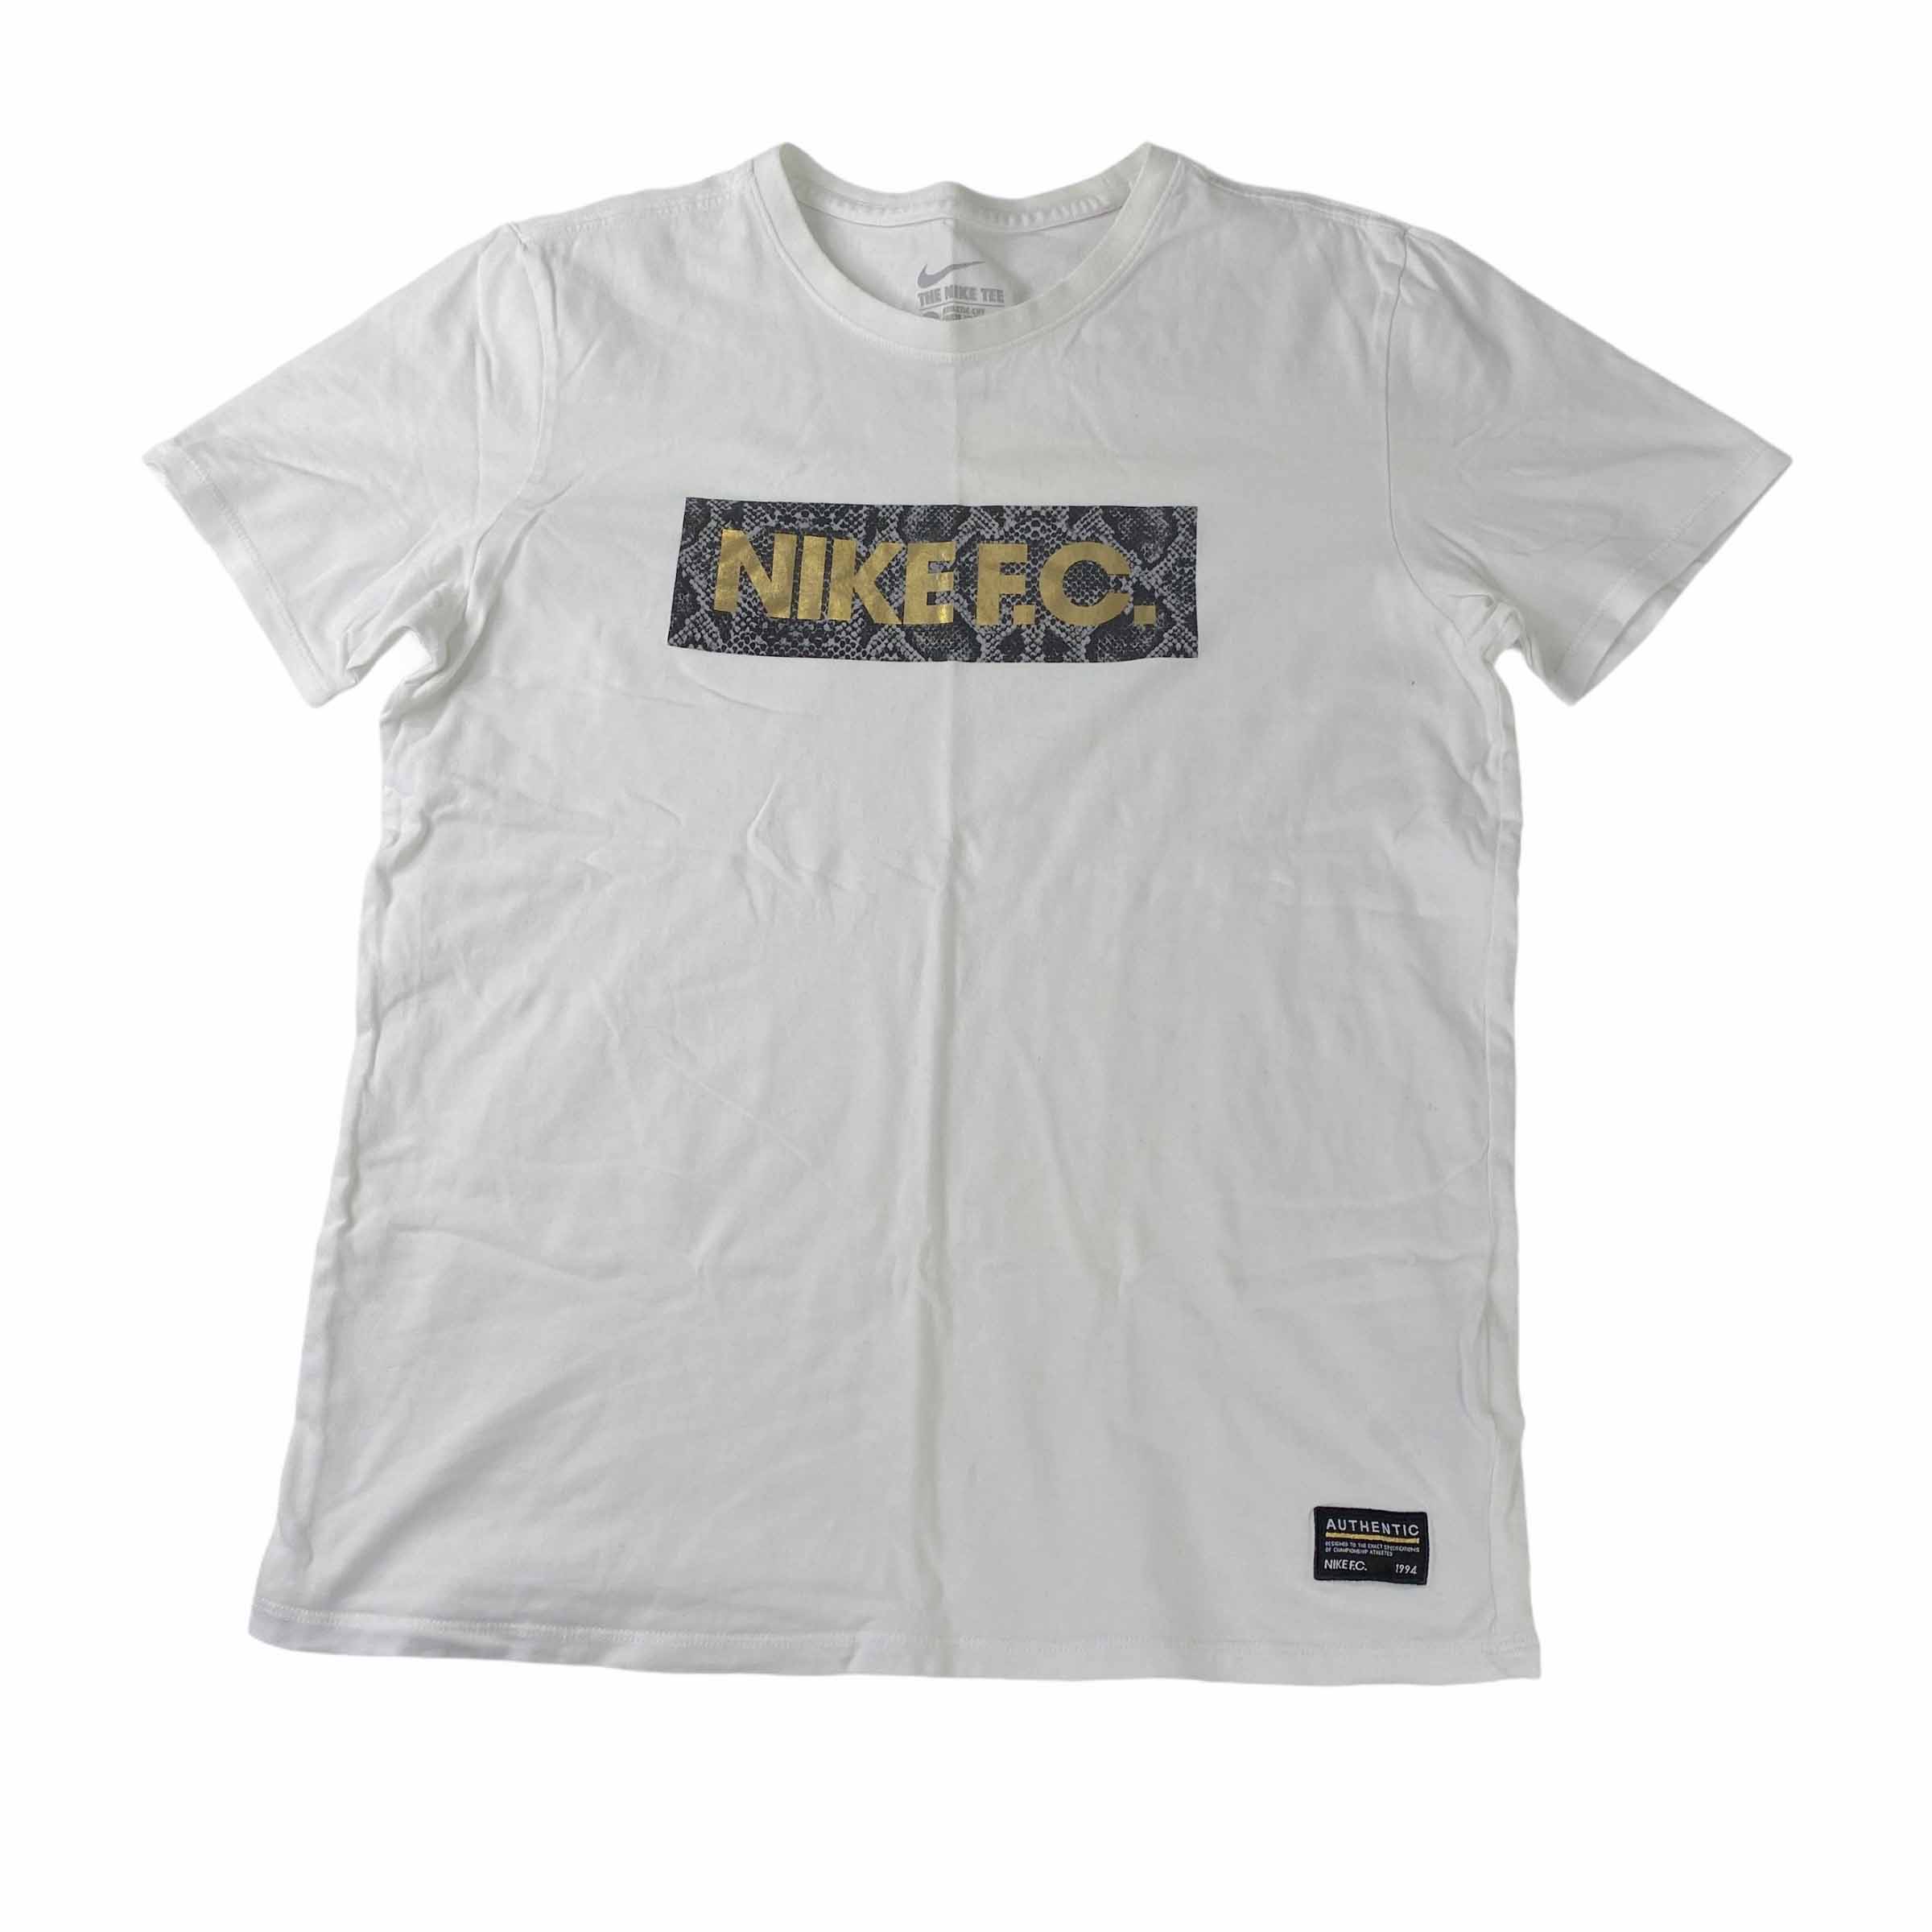 [Nike] Nike FC White Tshirt - Size M